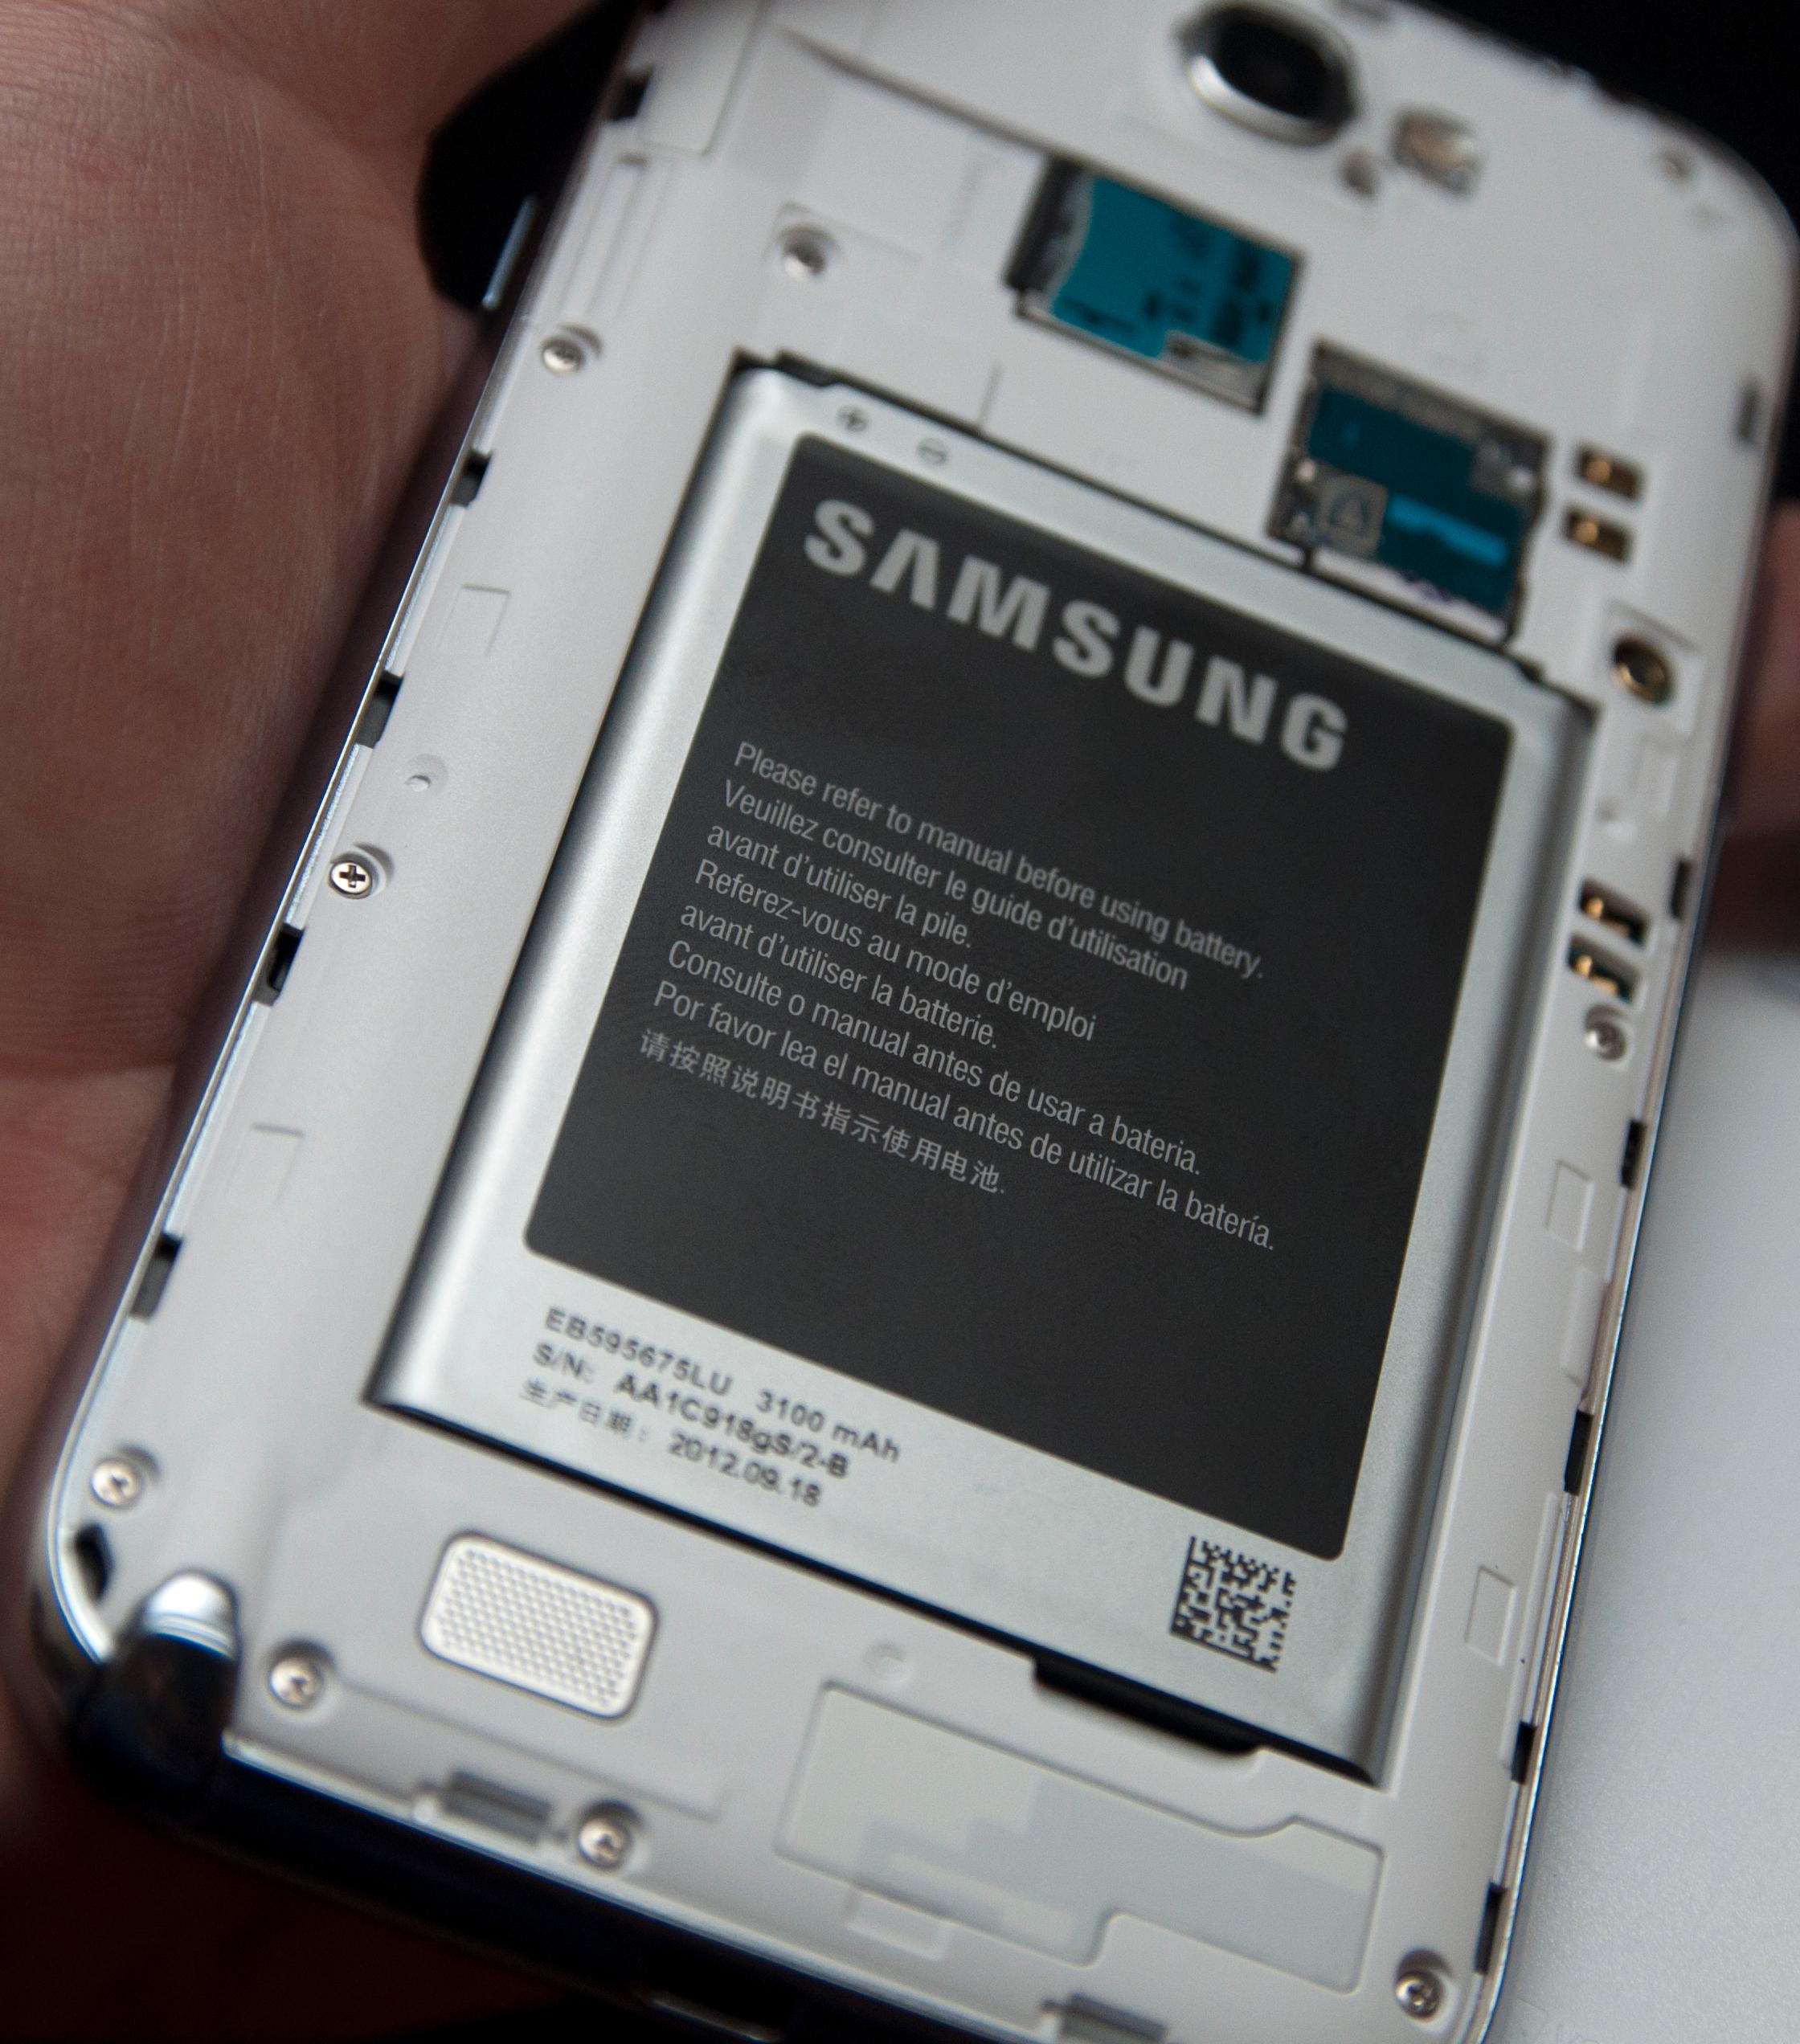 Galaxy Note II tåler et par dagers tung bruk før den må lades. Det skyldes et digert batteri på 3100 mAh.Foto: Finn Jarle Kvalheim, Amobil.no